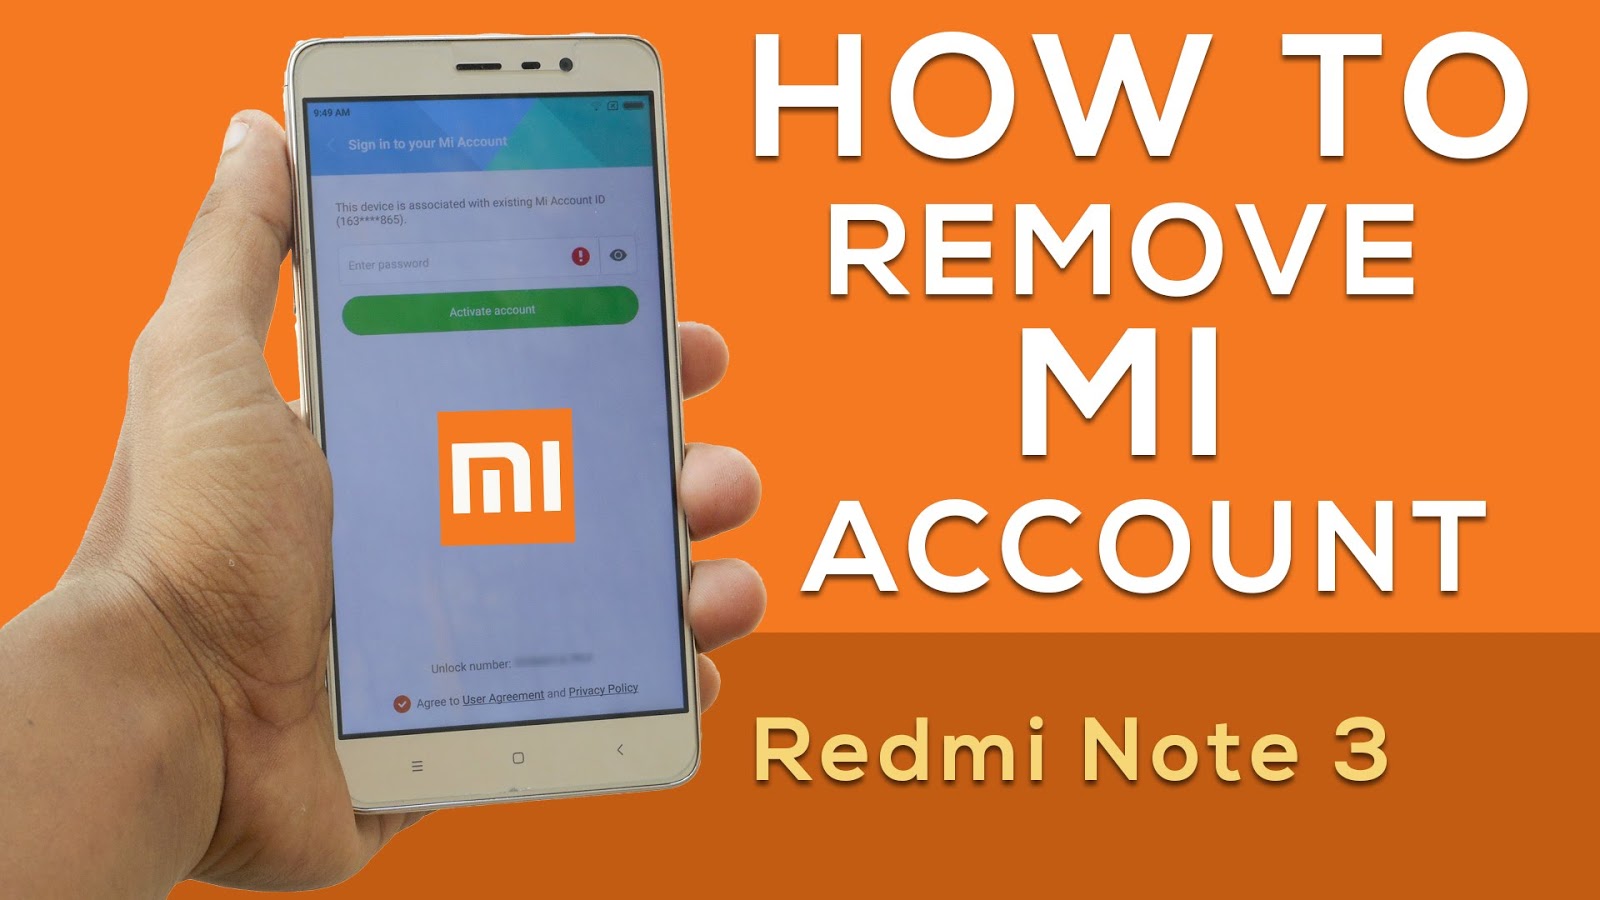 Redmi Note 3 Mi Account